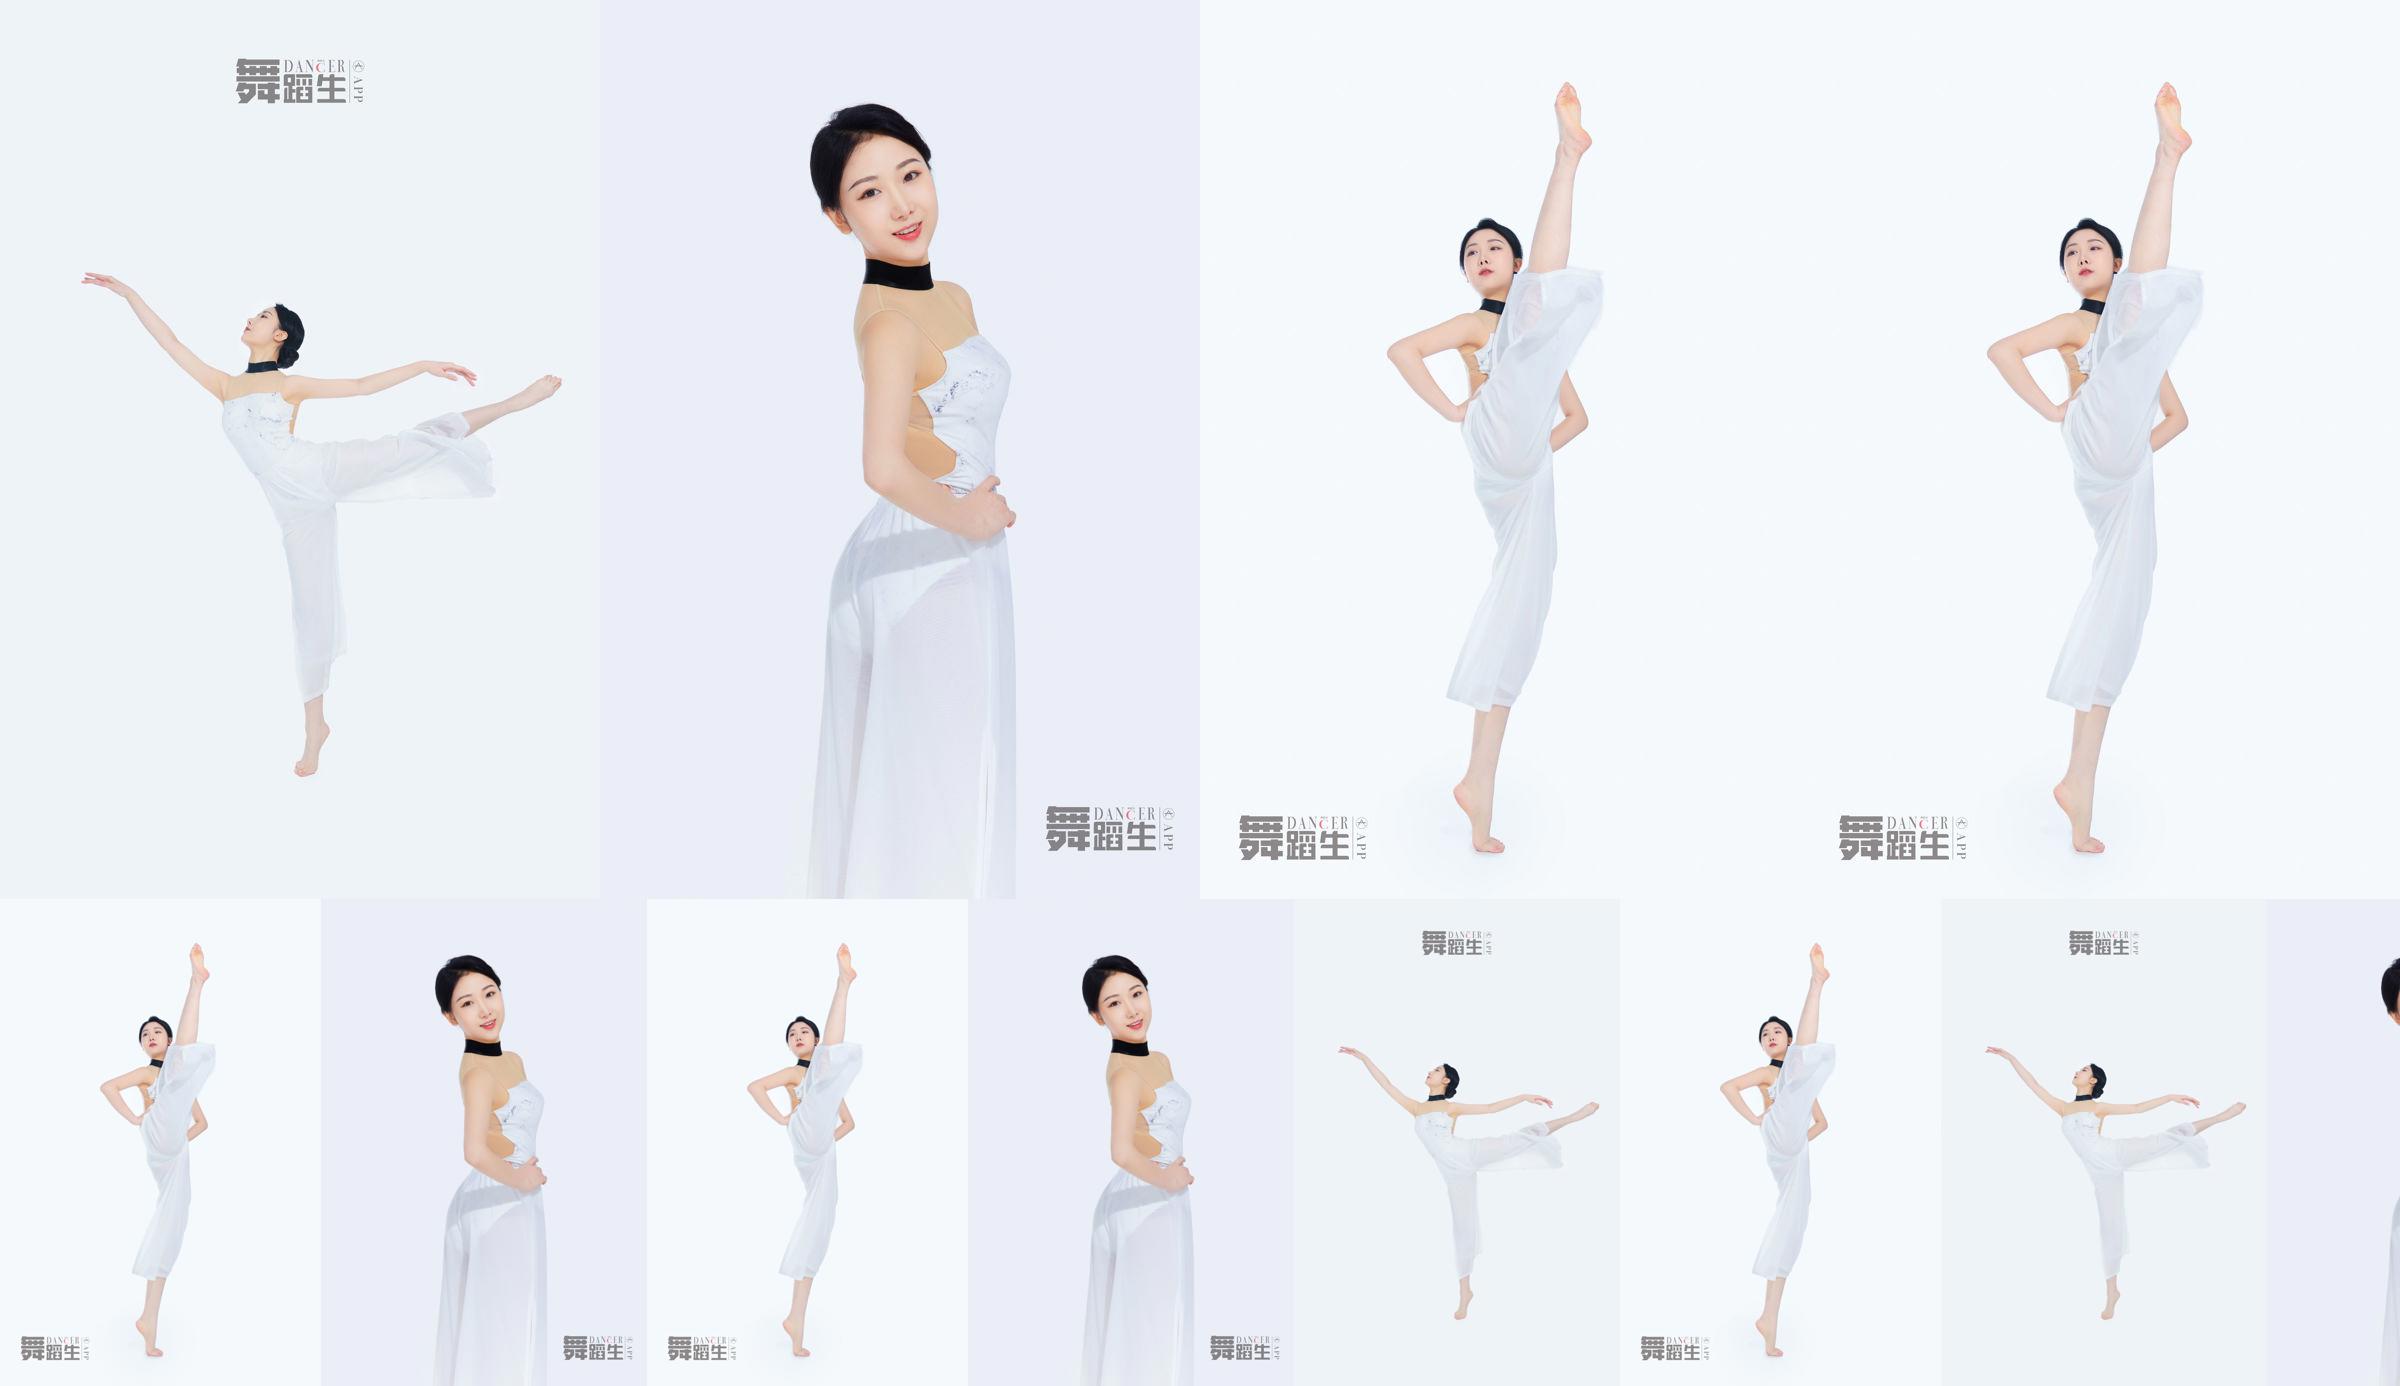 [Carrie Galli] Journal d'un étudiant en danse 081 Xue Hui No.faba8d Page 1